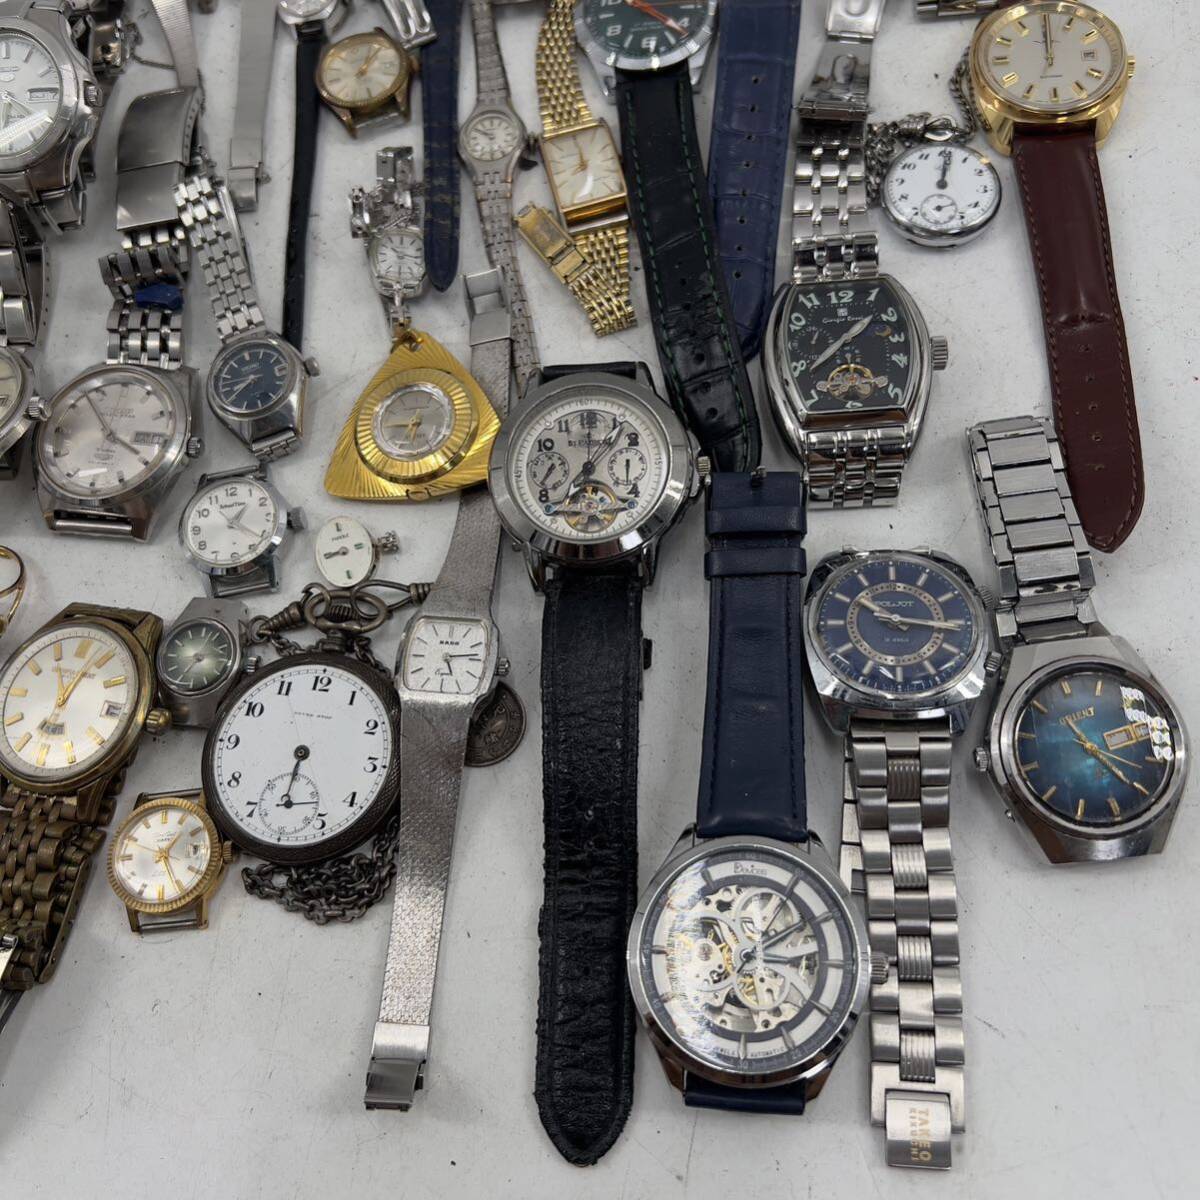  продажа комплектом самозаводящиеся часы механический завод часы SEIKO CITIZEN TECHNOS SONNE ORIENT J.HARRISON античный бренд мода различный 50шт.